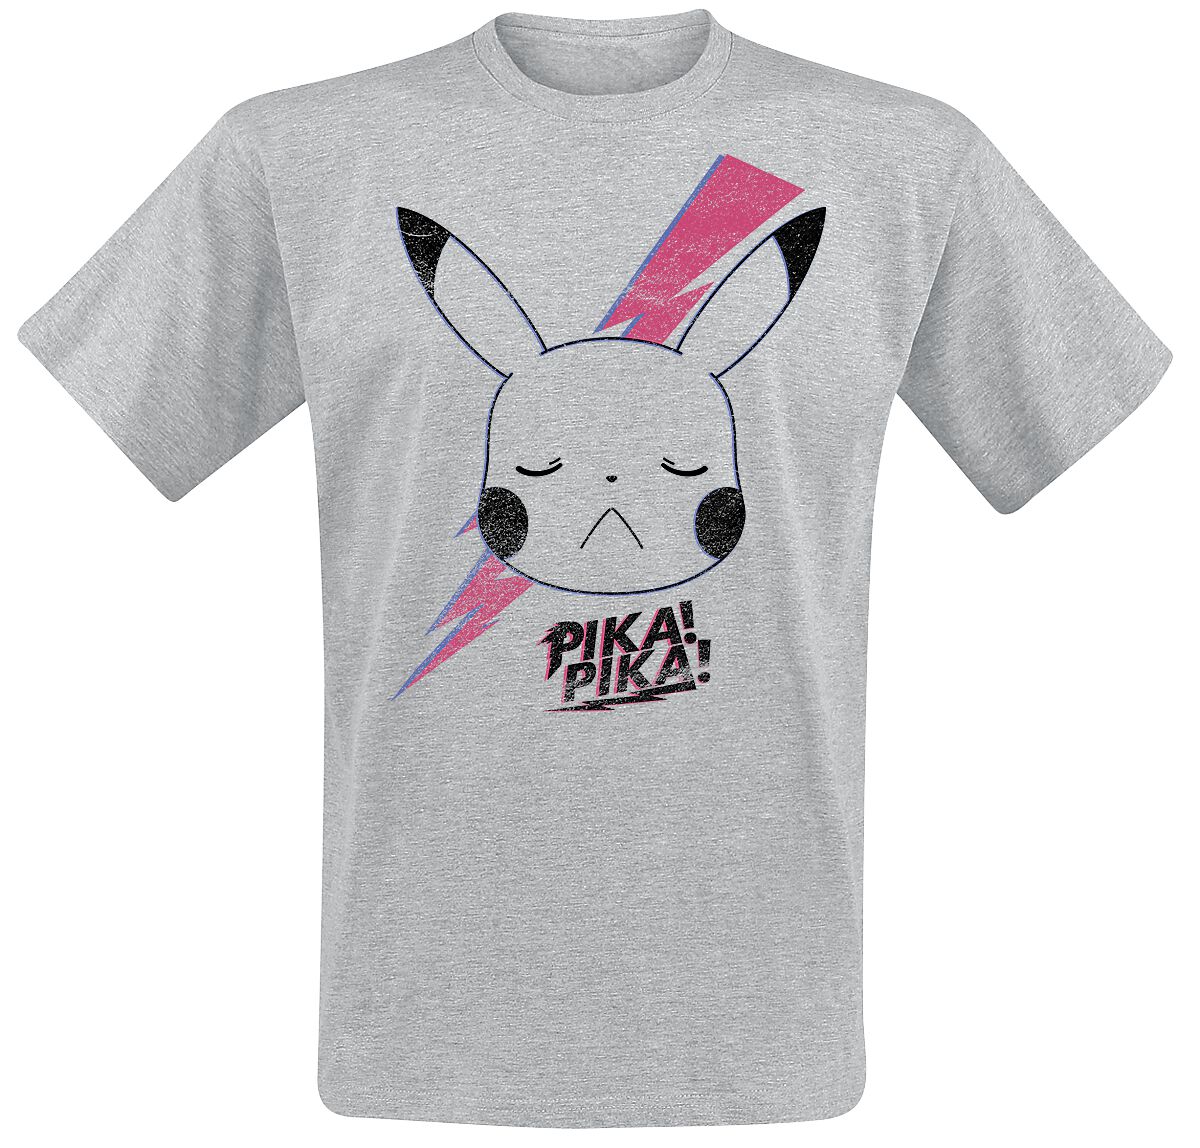 Pokémon Pikachu T-Shirt mottled grey